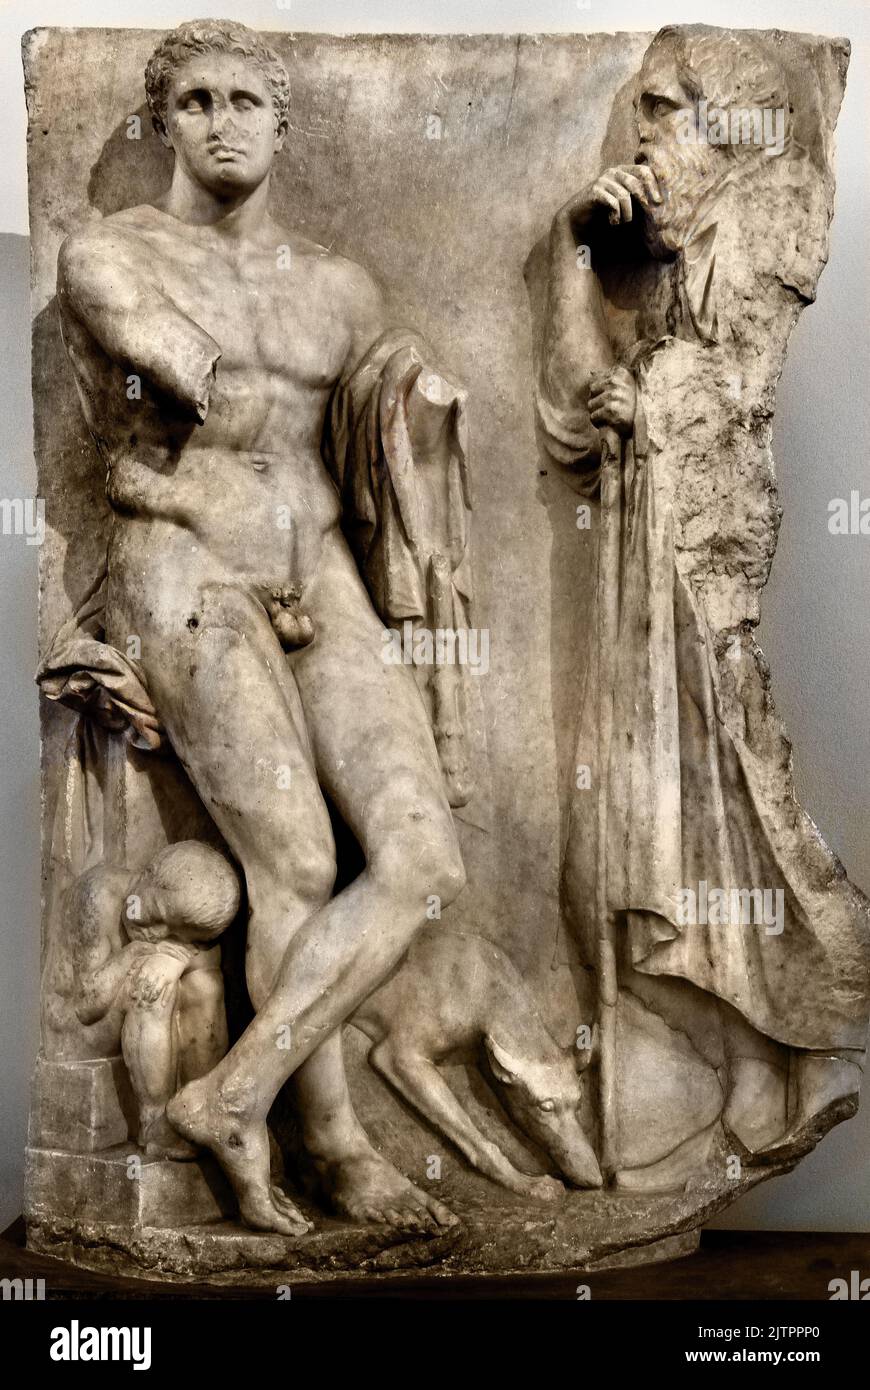 Sélé funéraire en marbre, jeune, trouvé dans le lit de la rivière Ilissos à Athènes, 340 av. J.-C., Musée archéologique national à Athènes. Banque D'Images